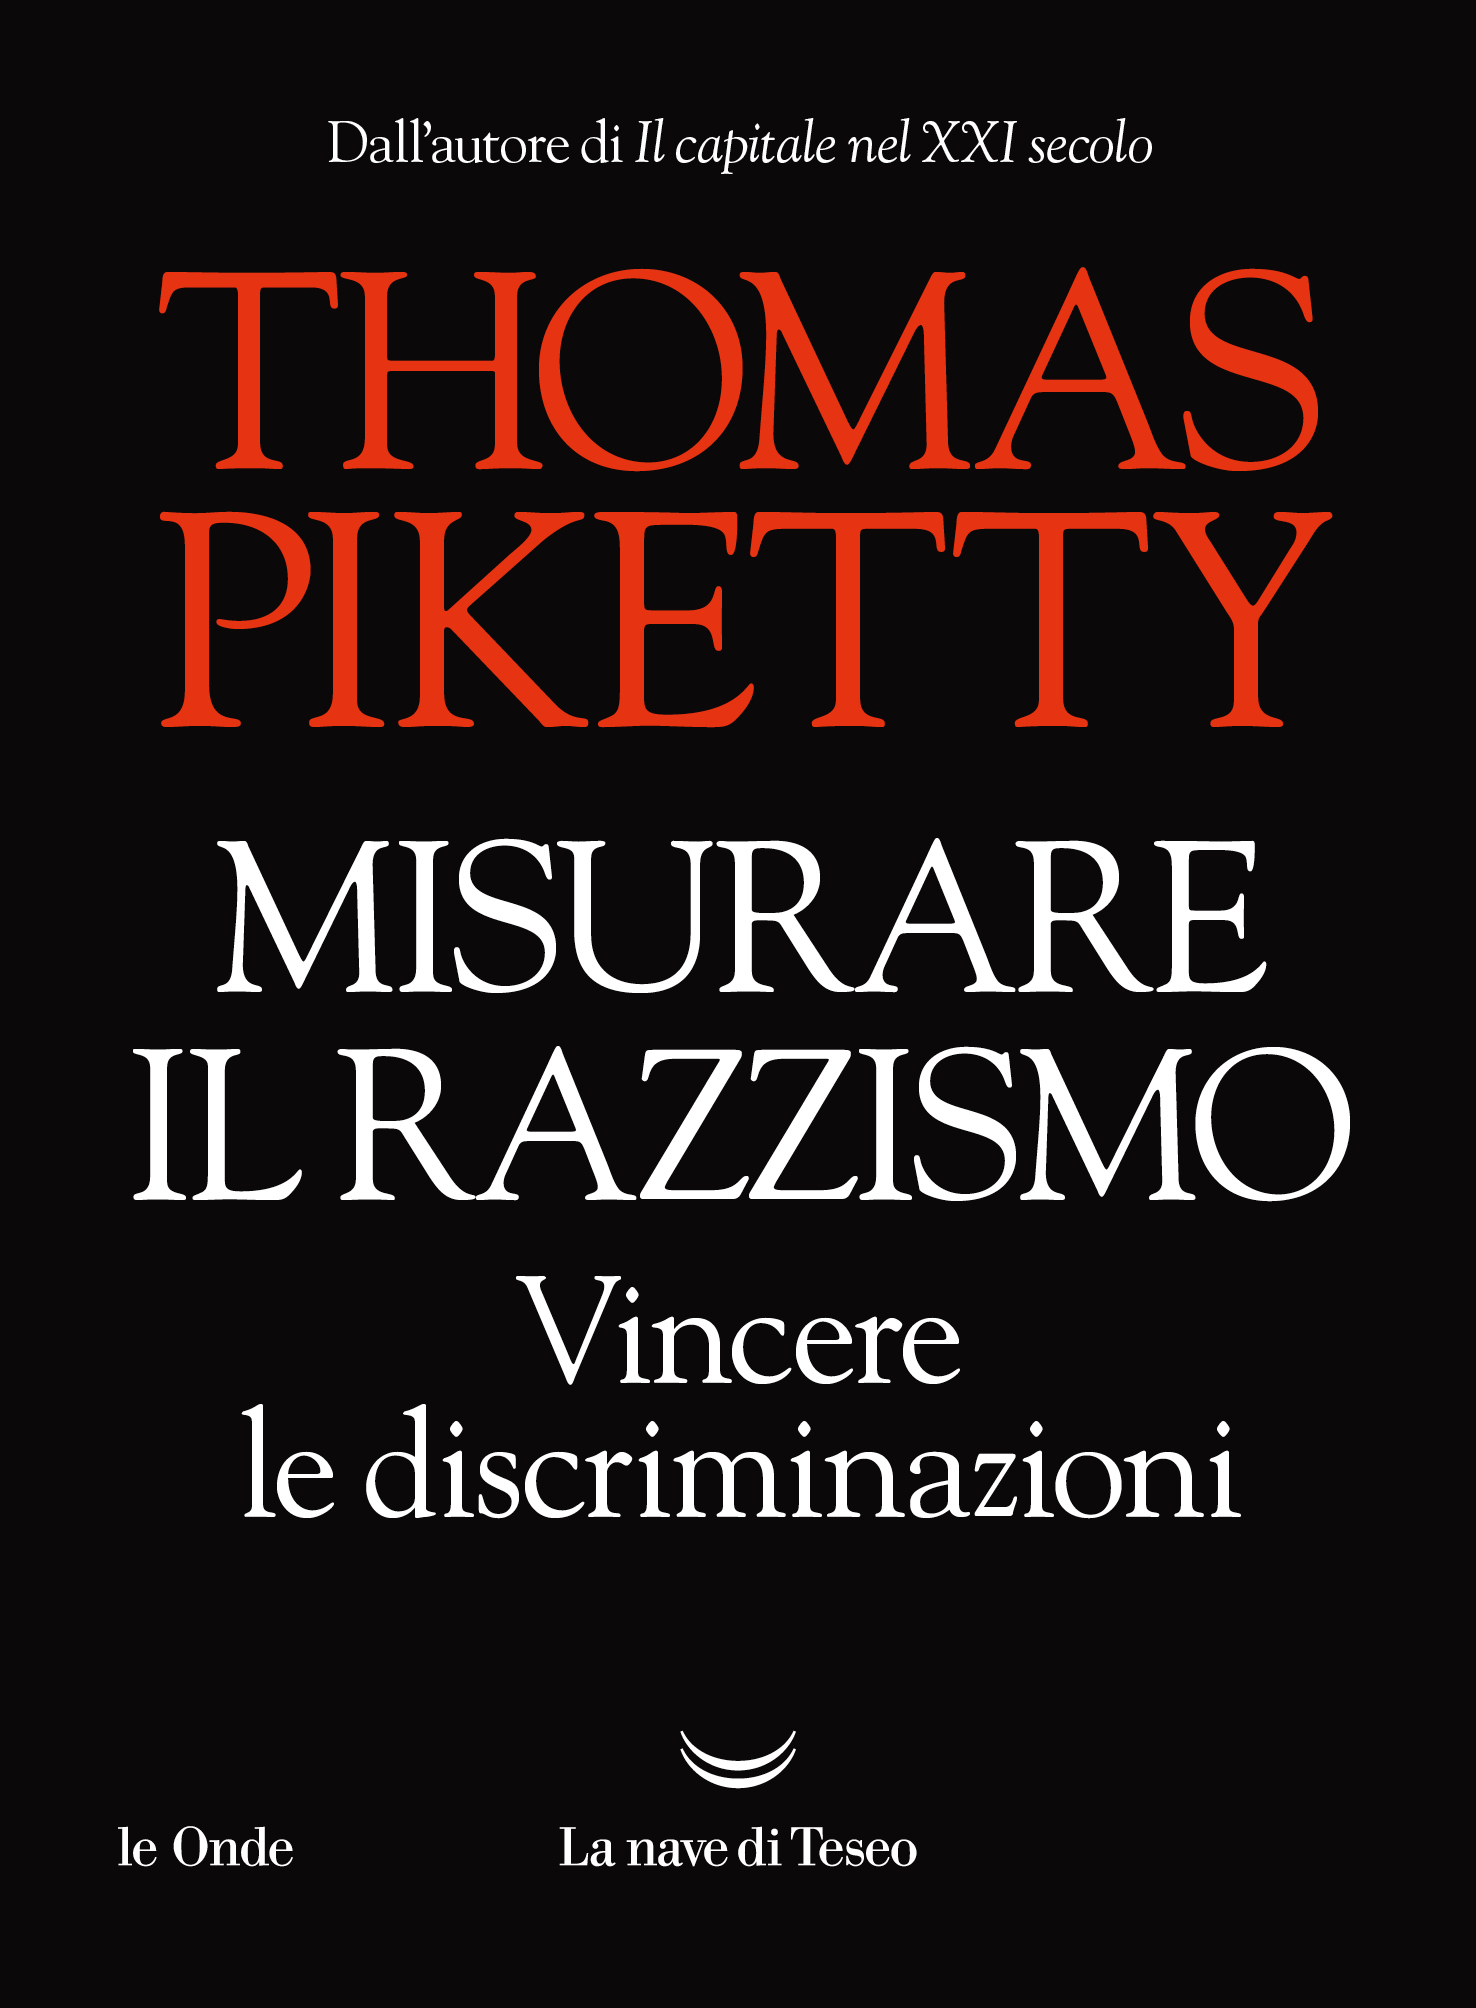 Piketty_Misurare-il-razzismo